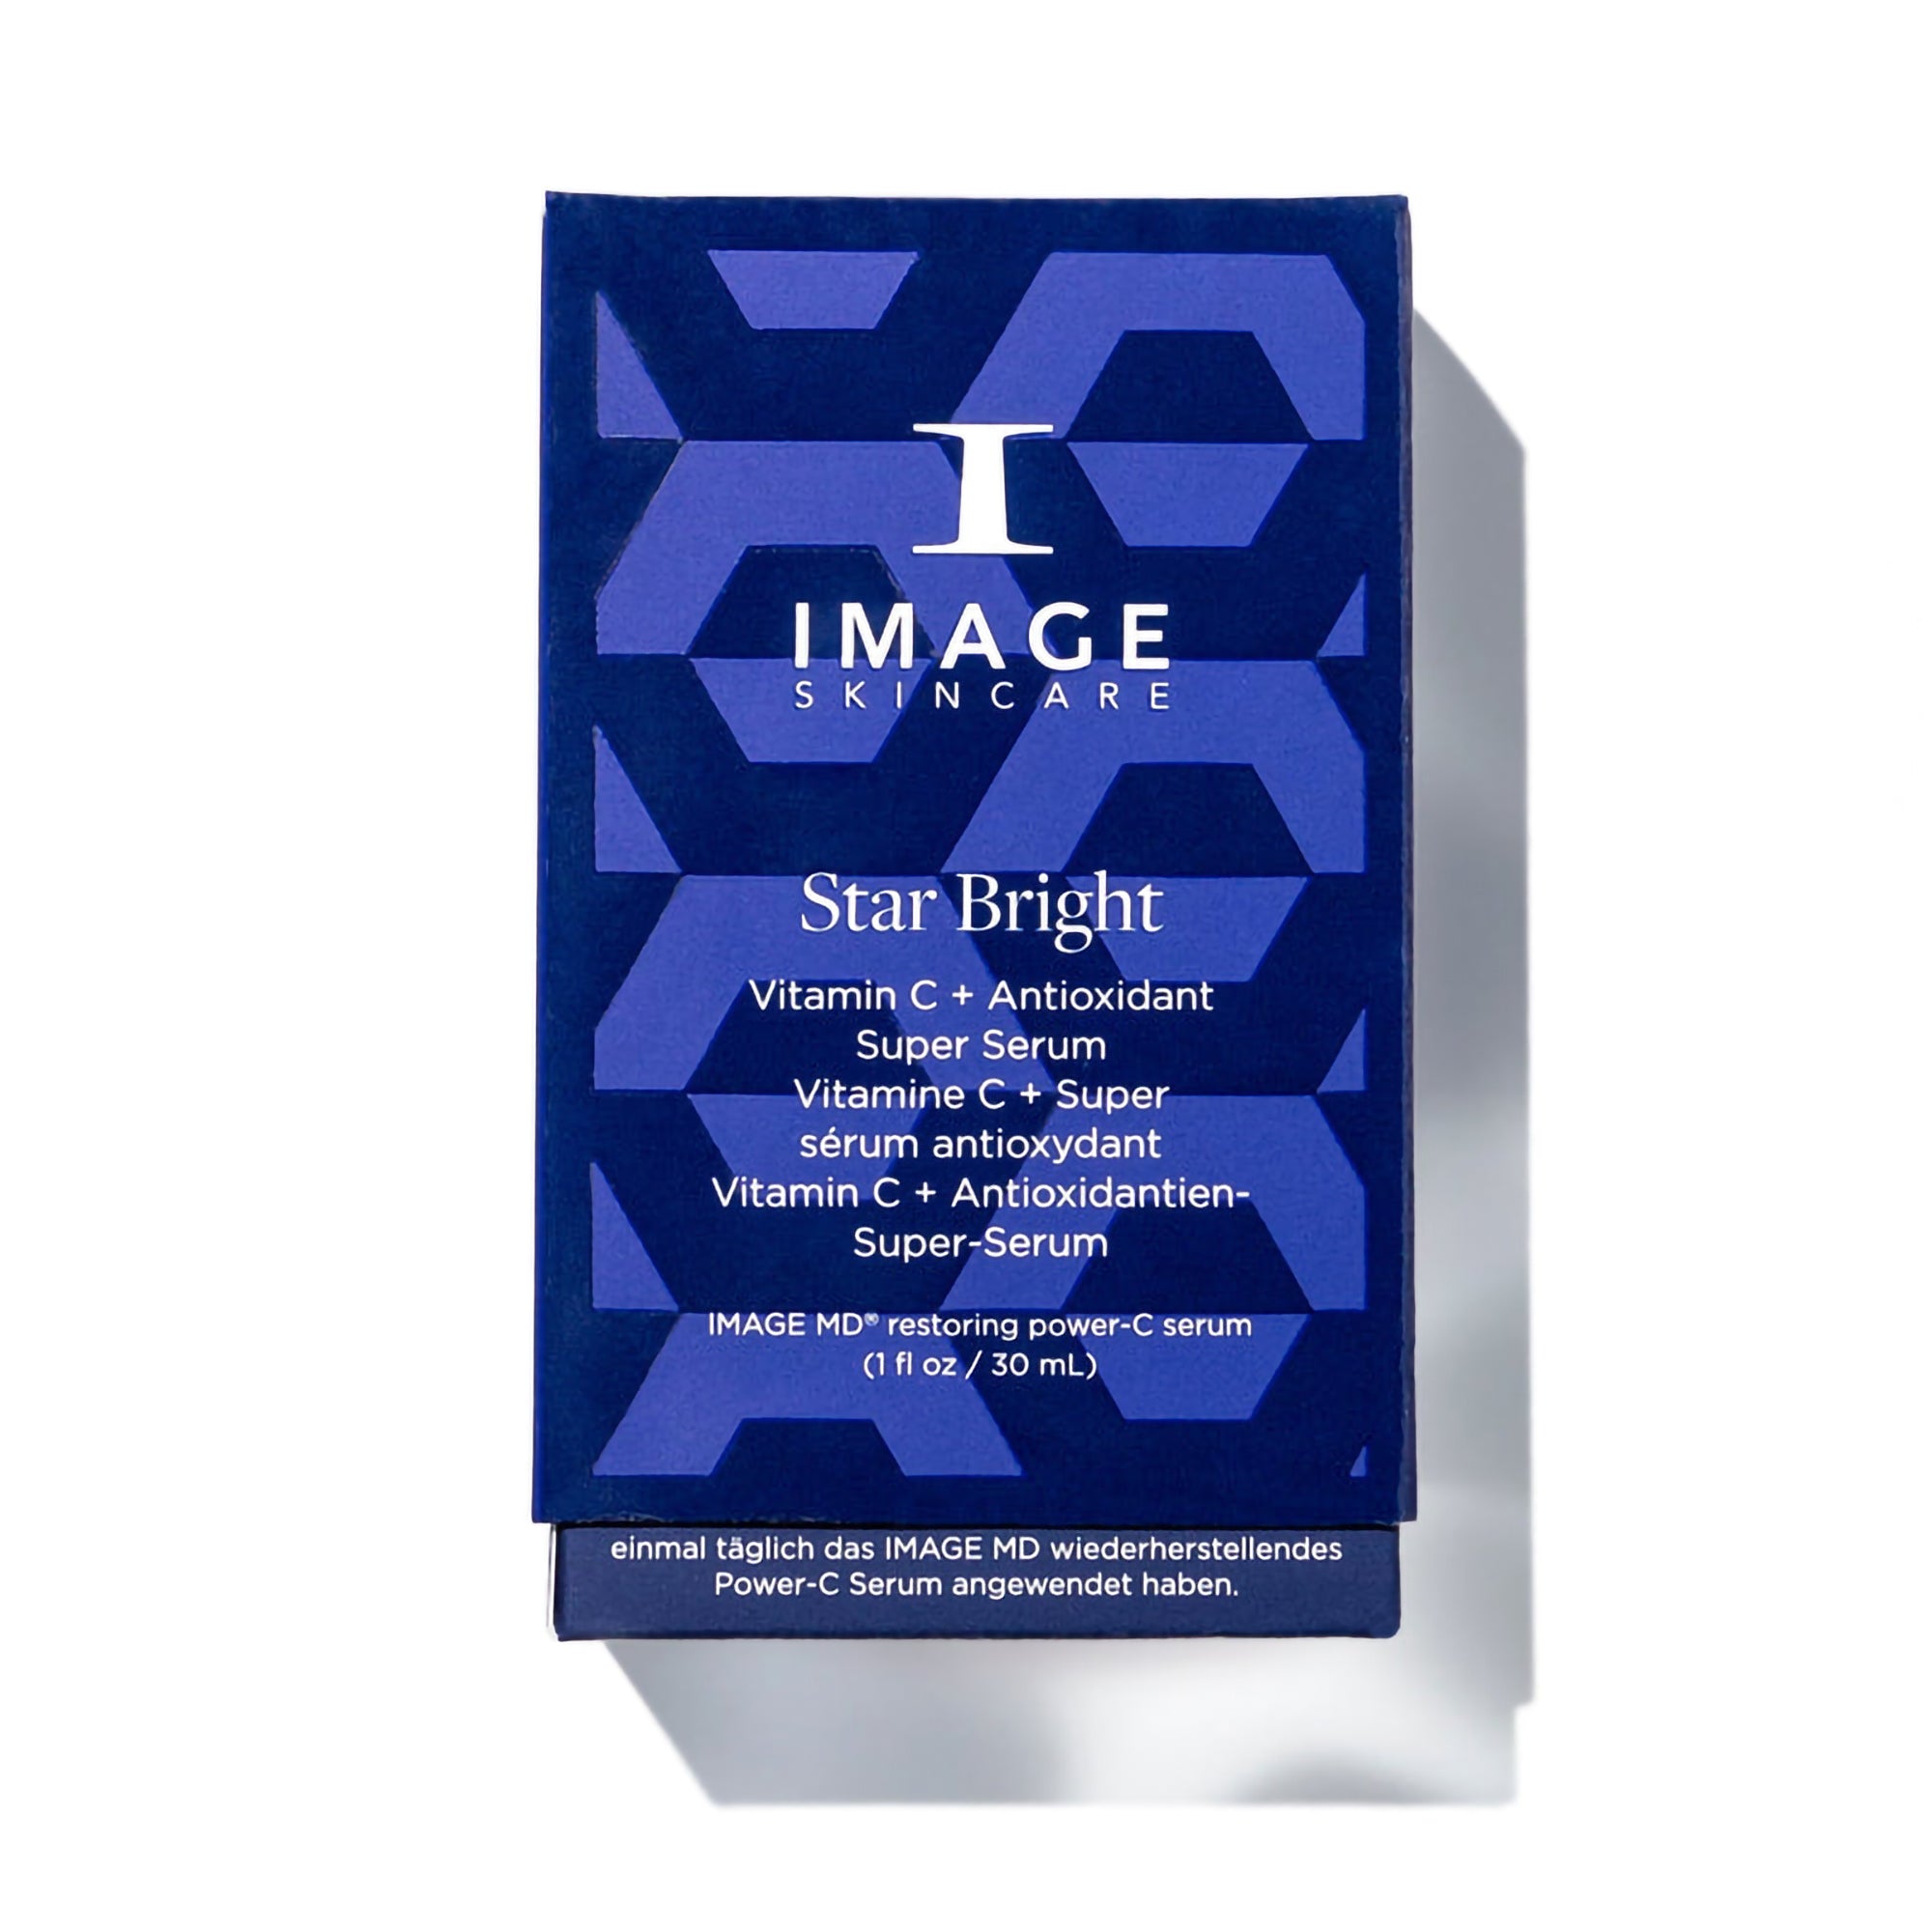 Image Skincare Star Bright Vitamin C + Antioxidant Super Serum